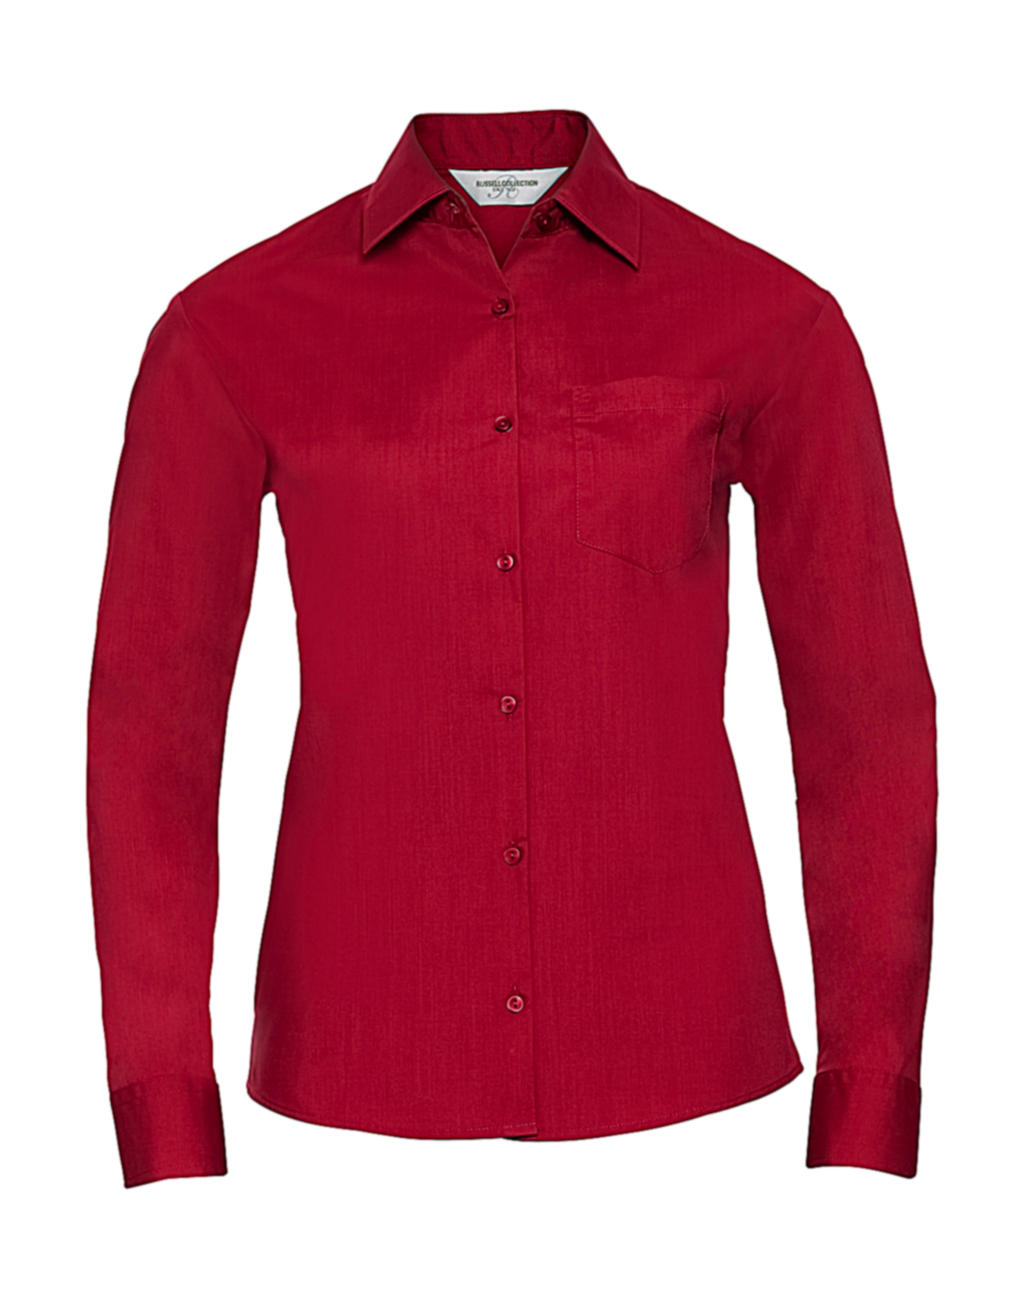  Ladies LS Poplin Shirt in Farbe Classic Red